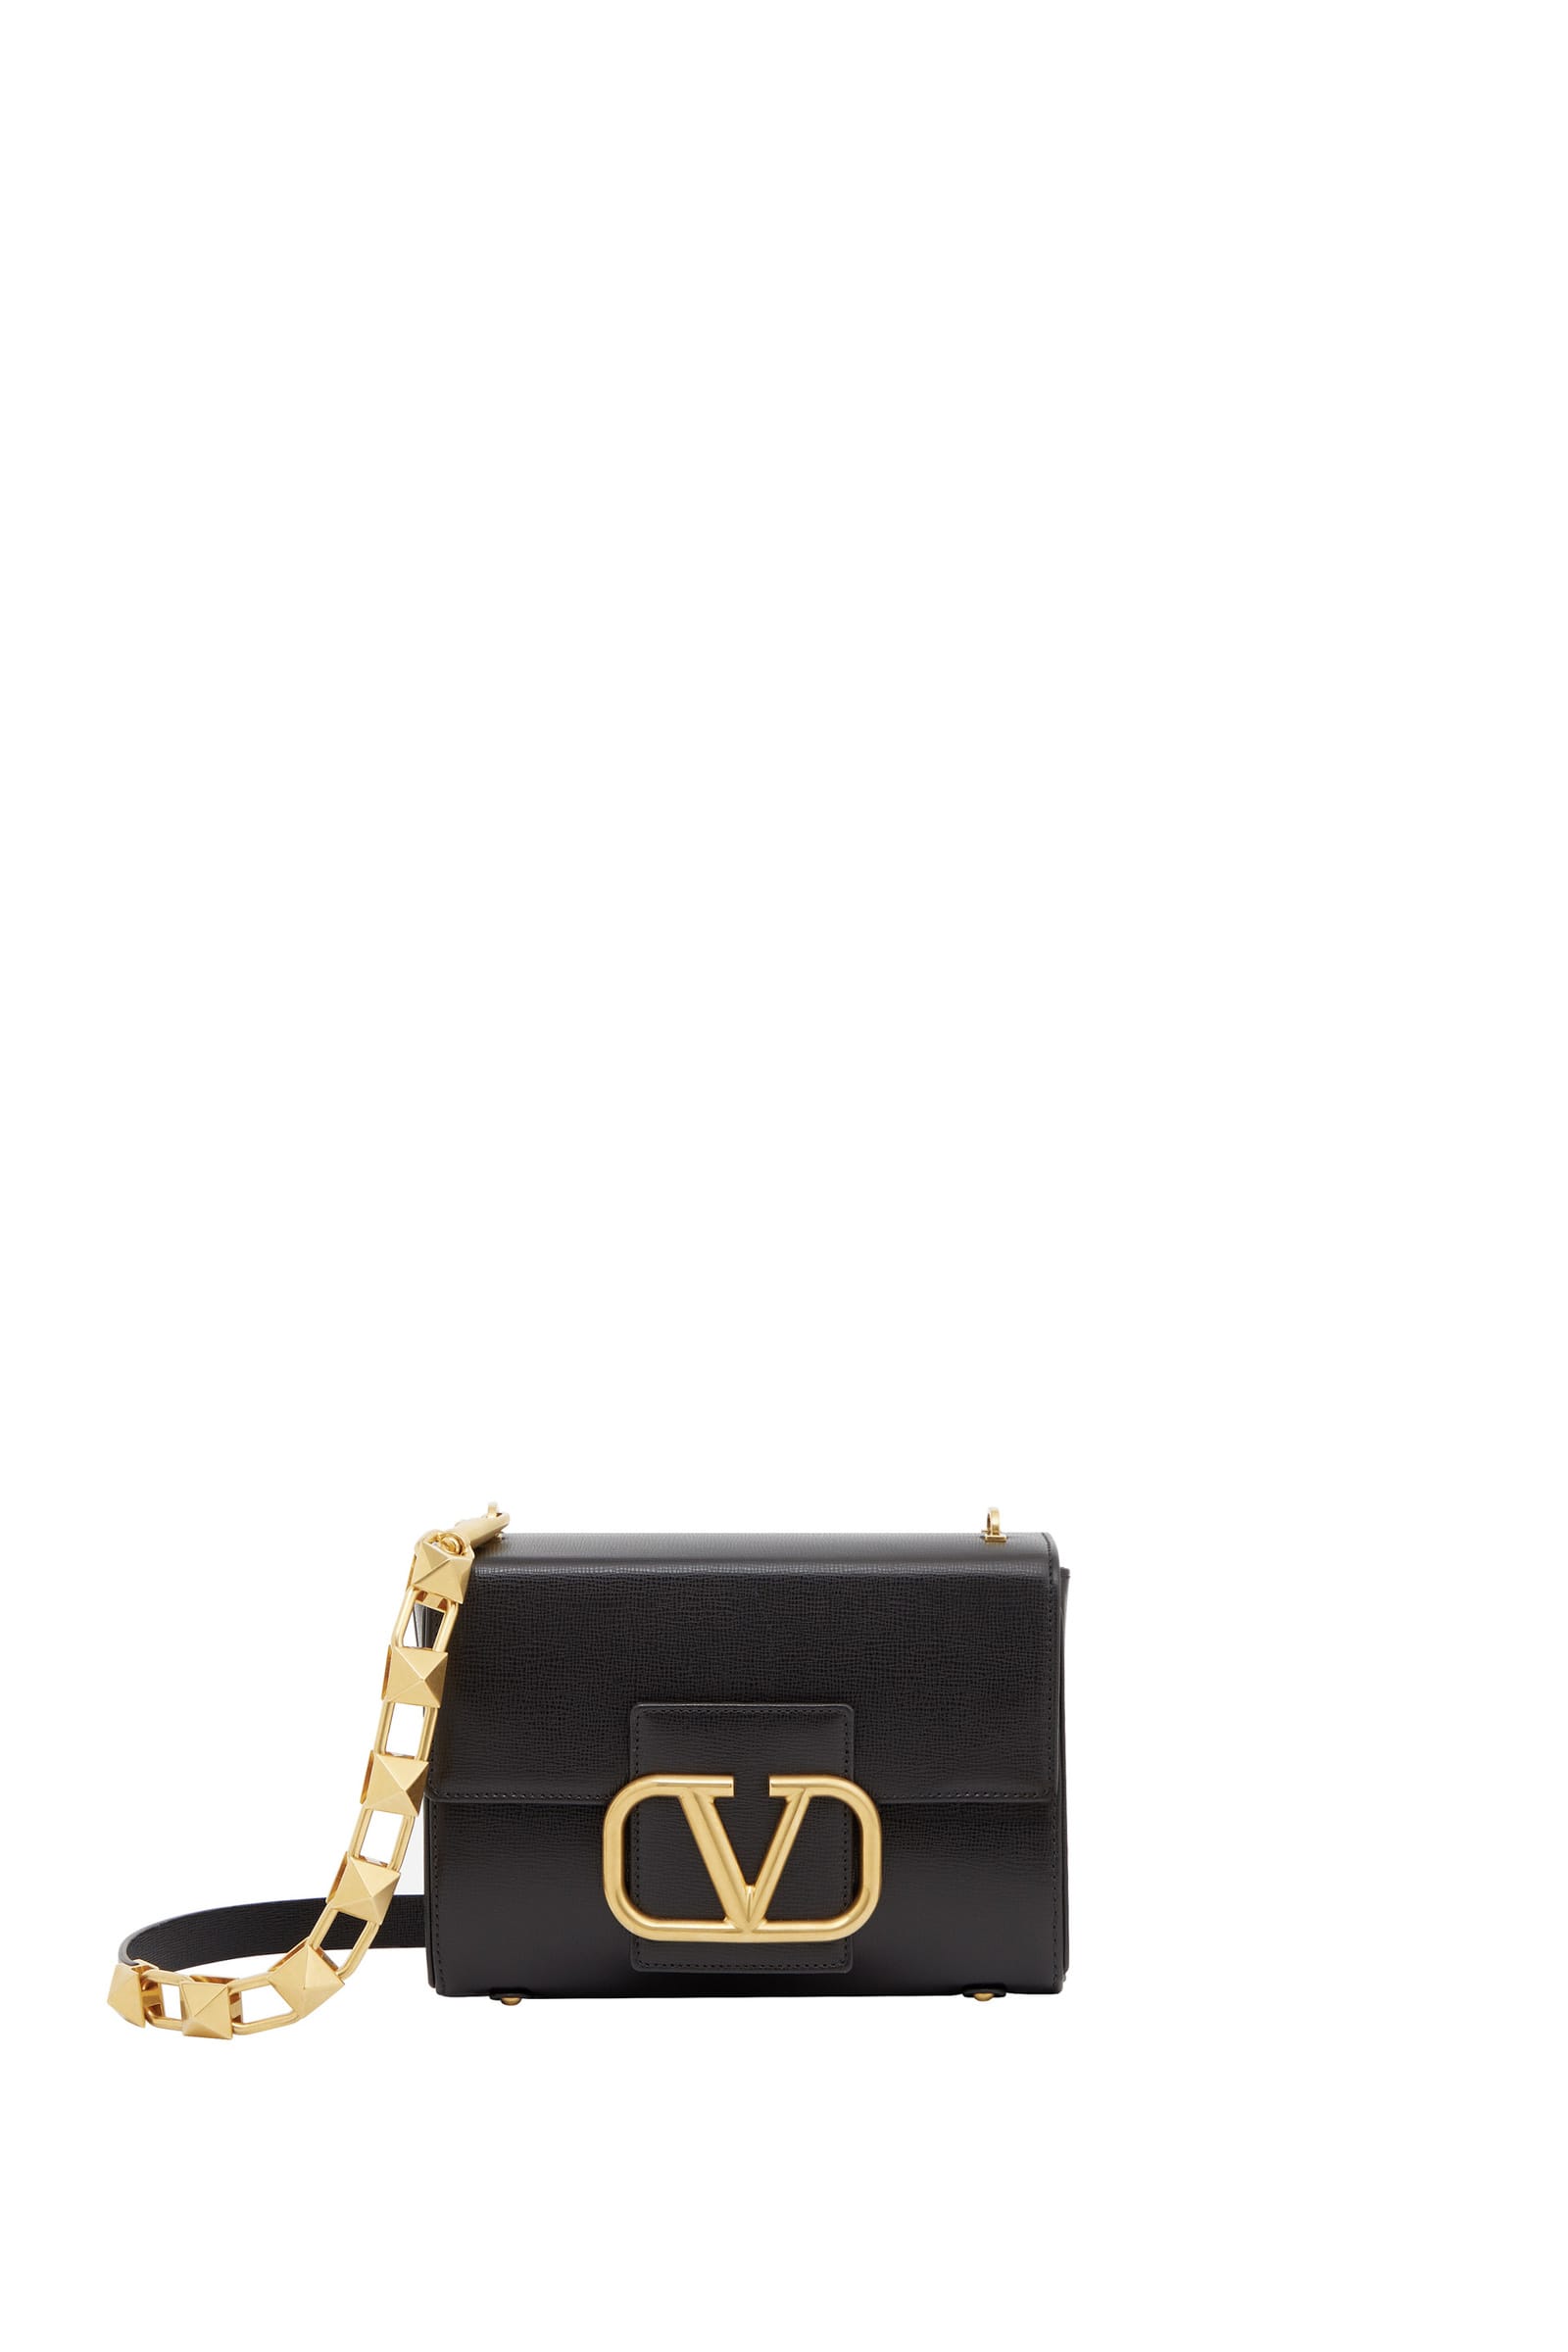 ヴァレンティノ、ブランドを象徴するVロゴをあしらった新作バッグ 